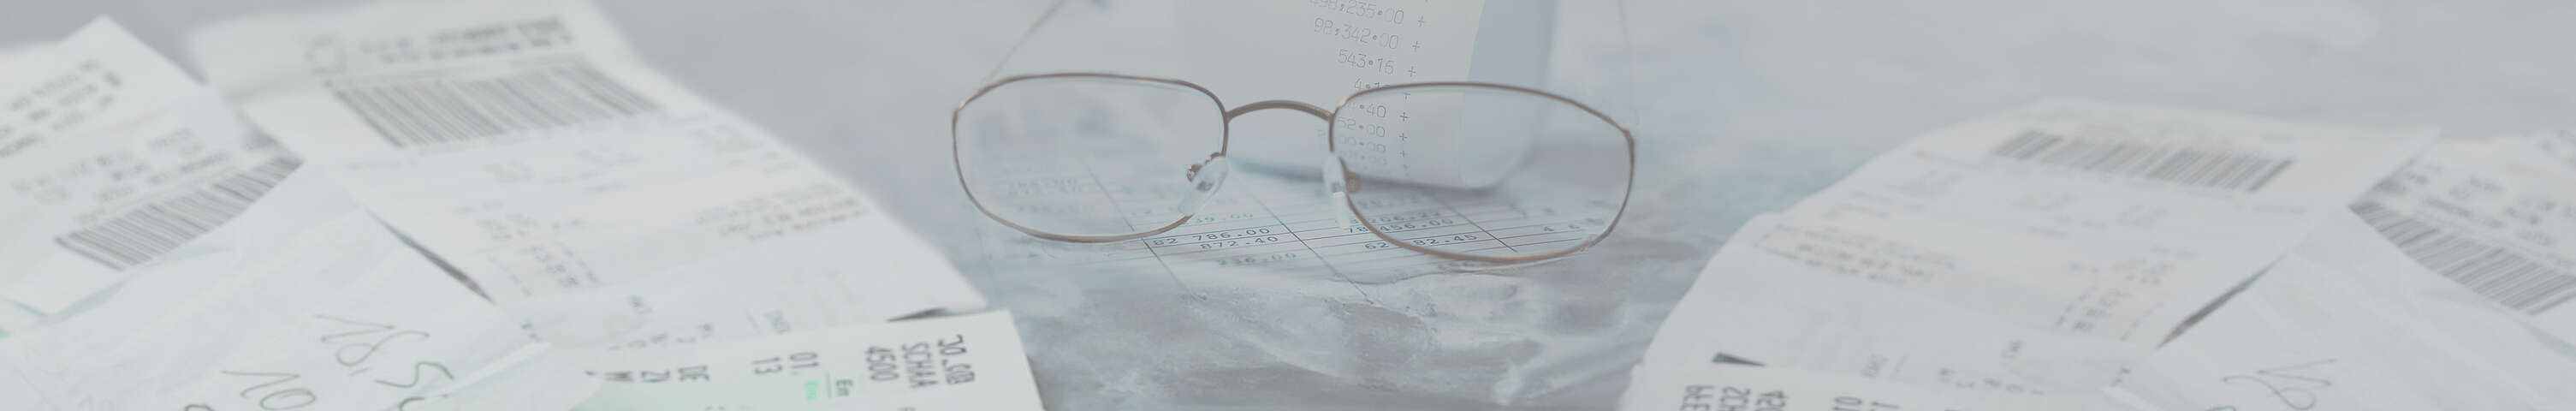 Brille liegt auf einem Rechnungszettel